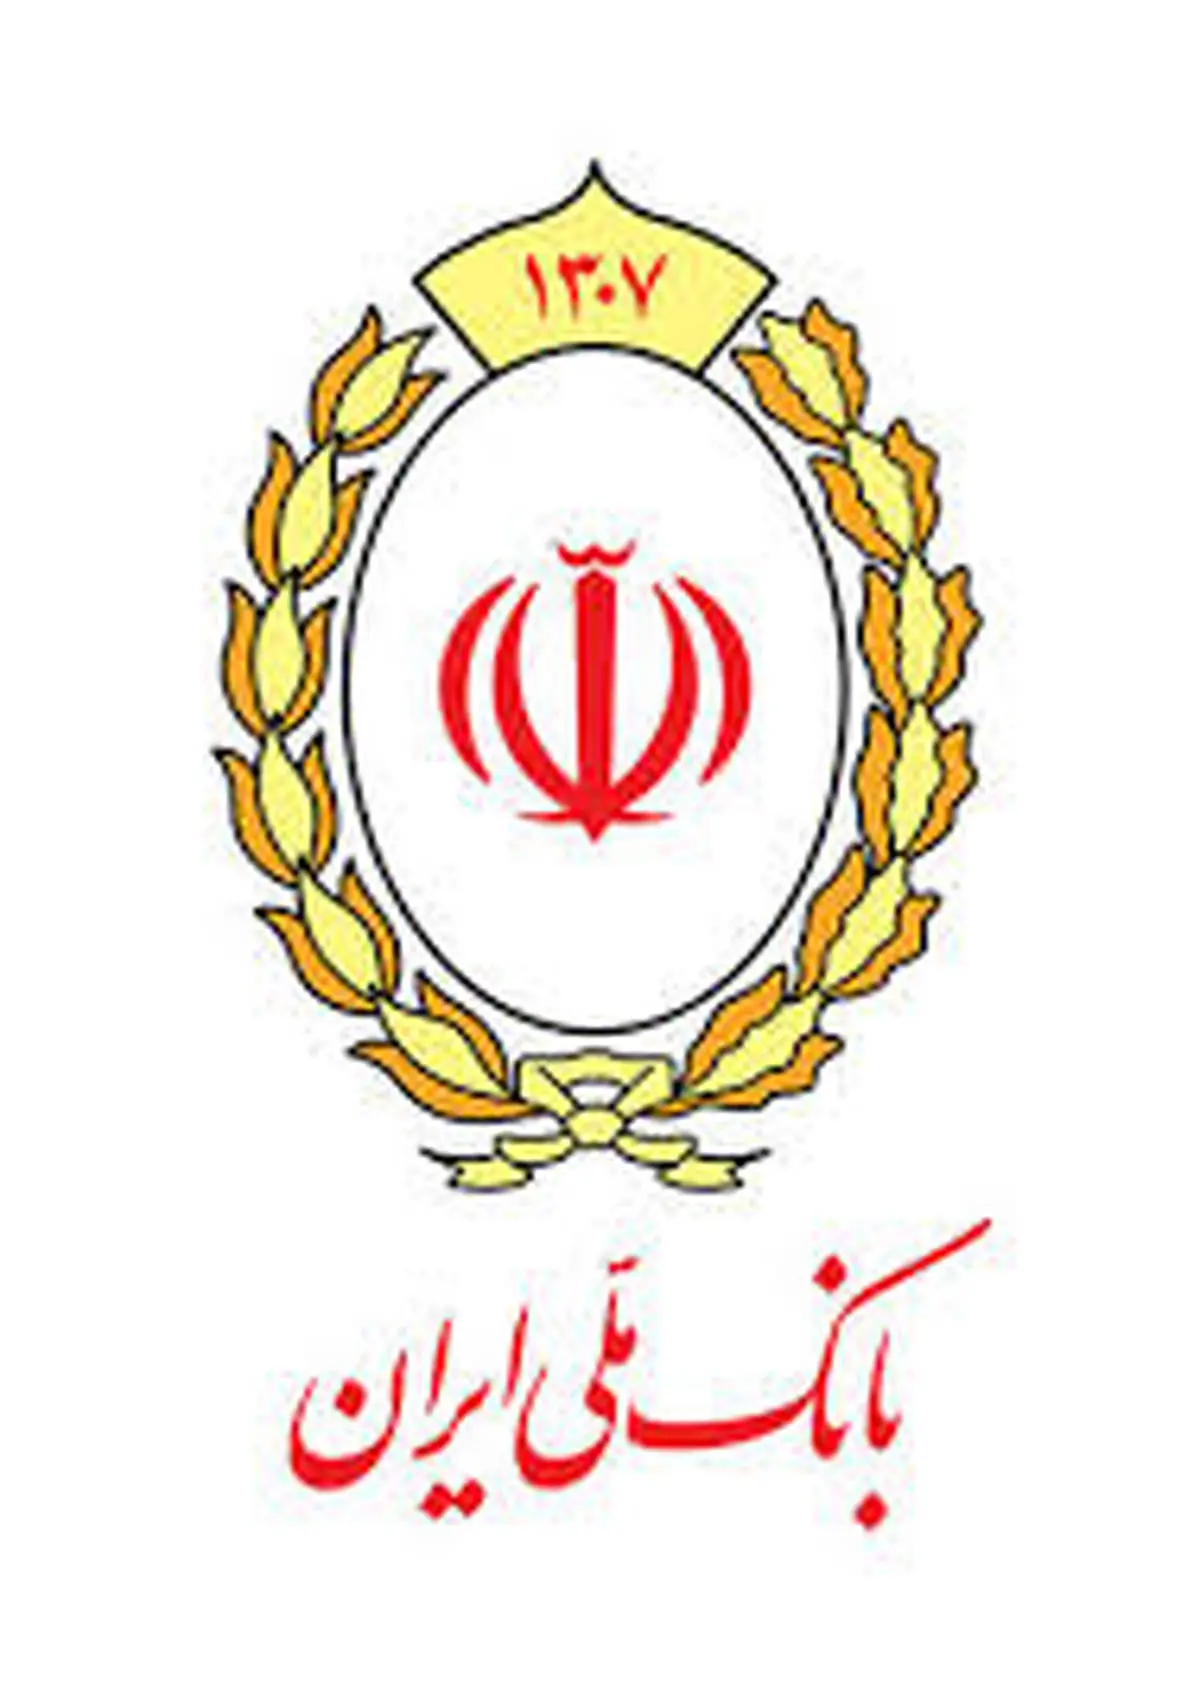 تعیین تکلیف 11 هزار میلیارد ریال از اموال مازاد بانک ملی ایران در سال 98

